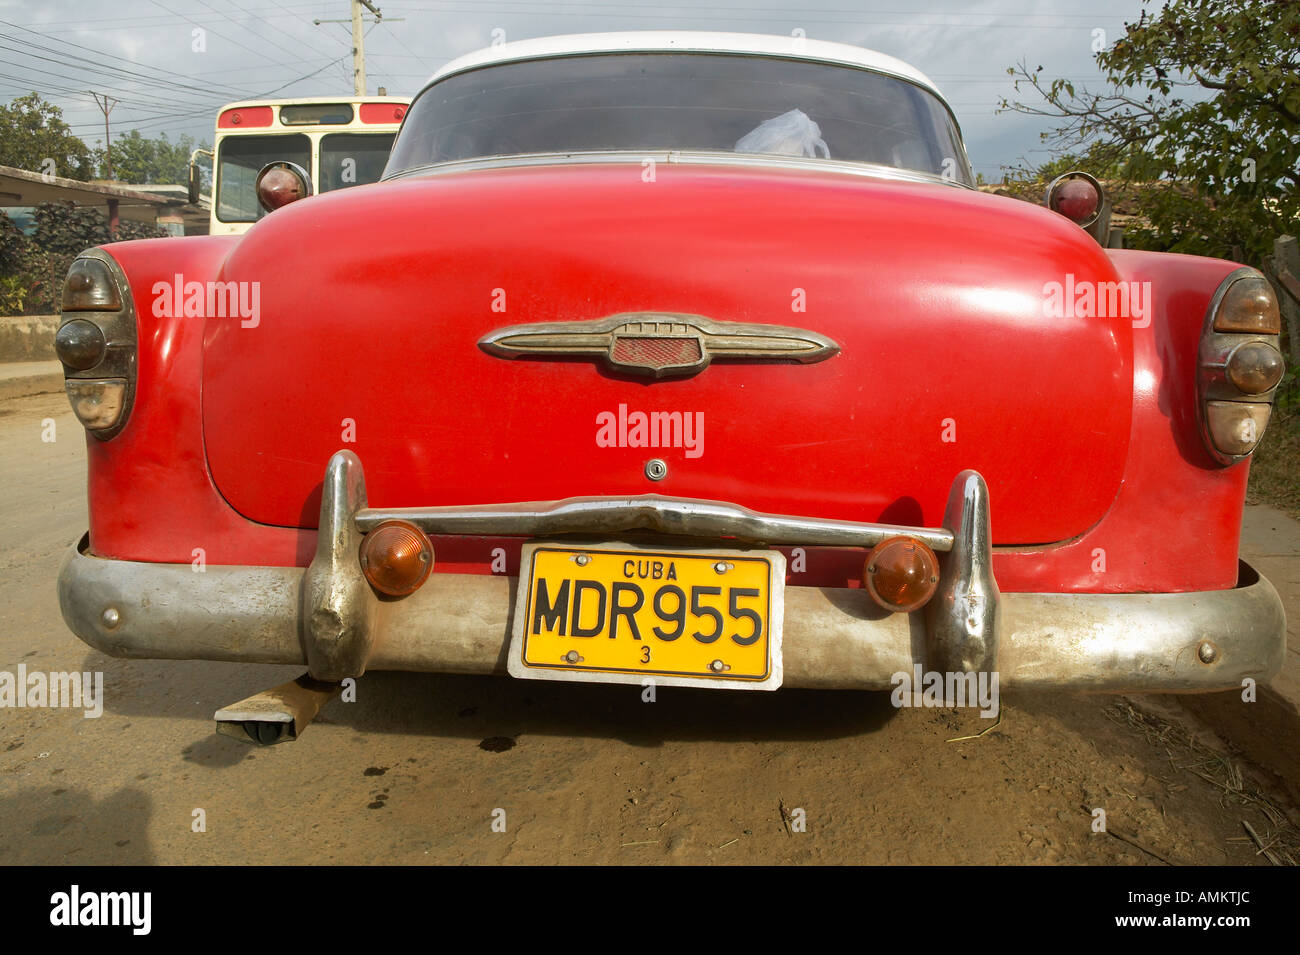 Alte rote Pontiac mit einem kubanischen Kennzeichen in Havanna Kuba Stockfoto